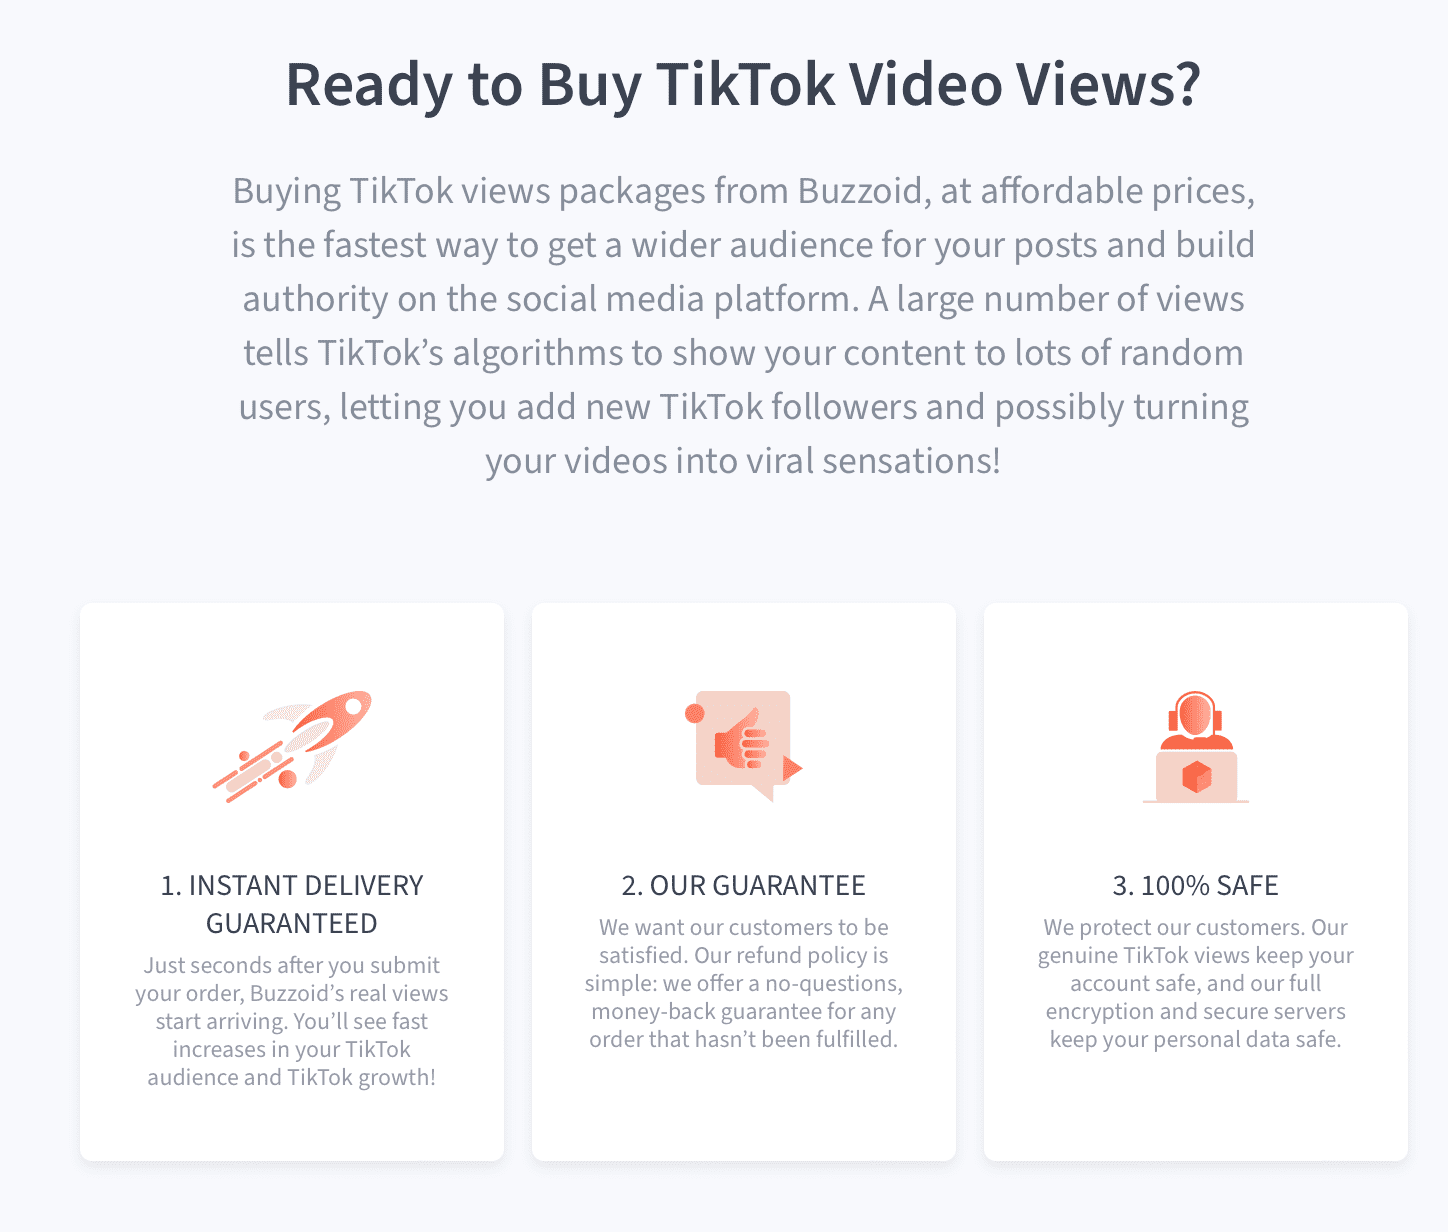 Ready to Buy TikTok Video Views?